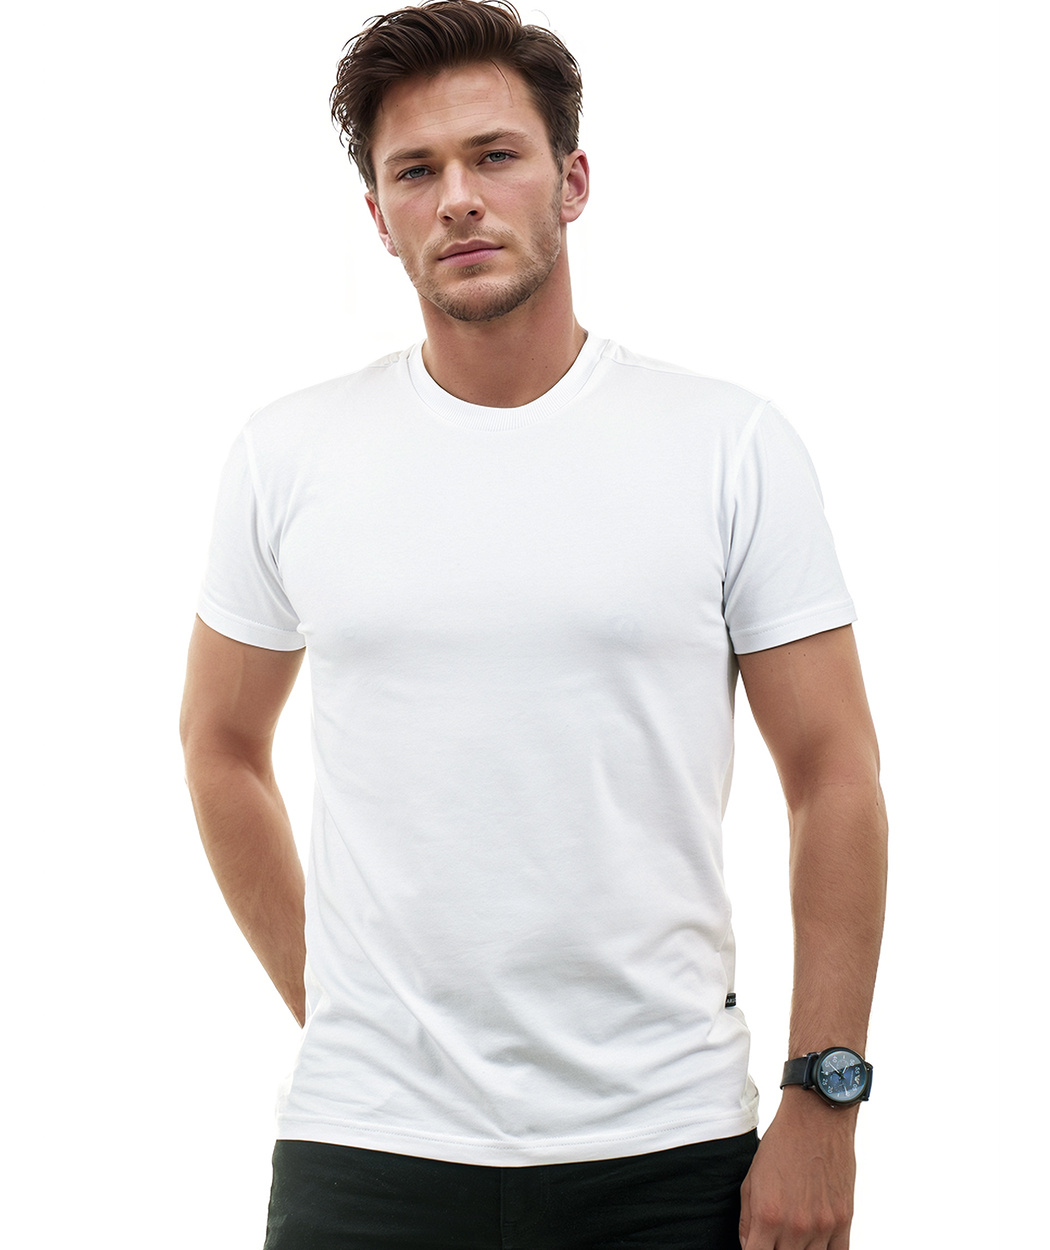 Biały t-shirt męski Lamon - PREMIUM QUALITY Biały | Koszulki męskie ...